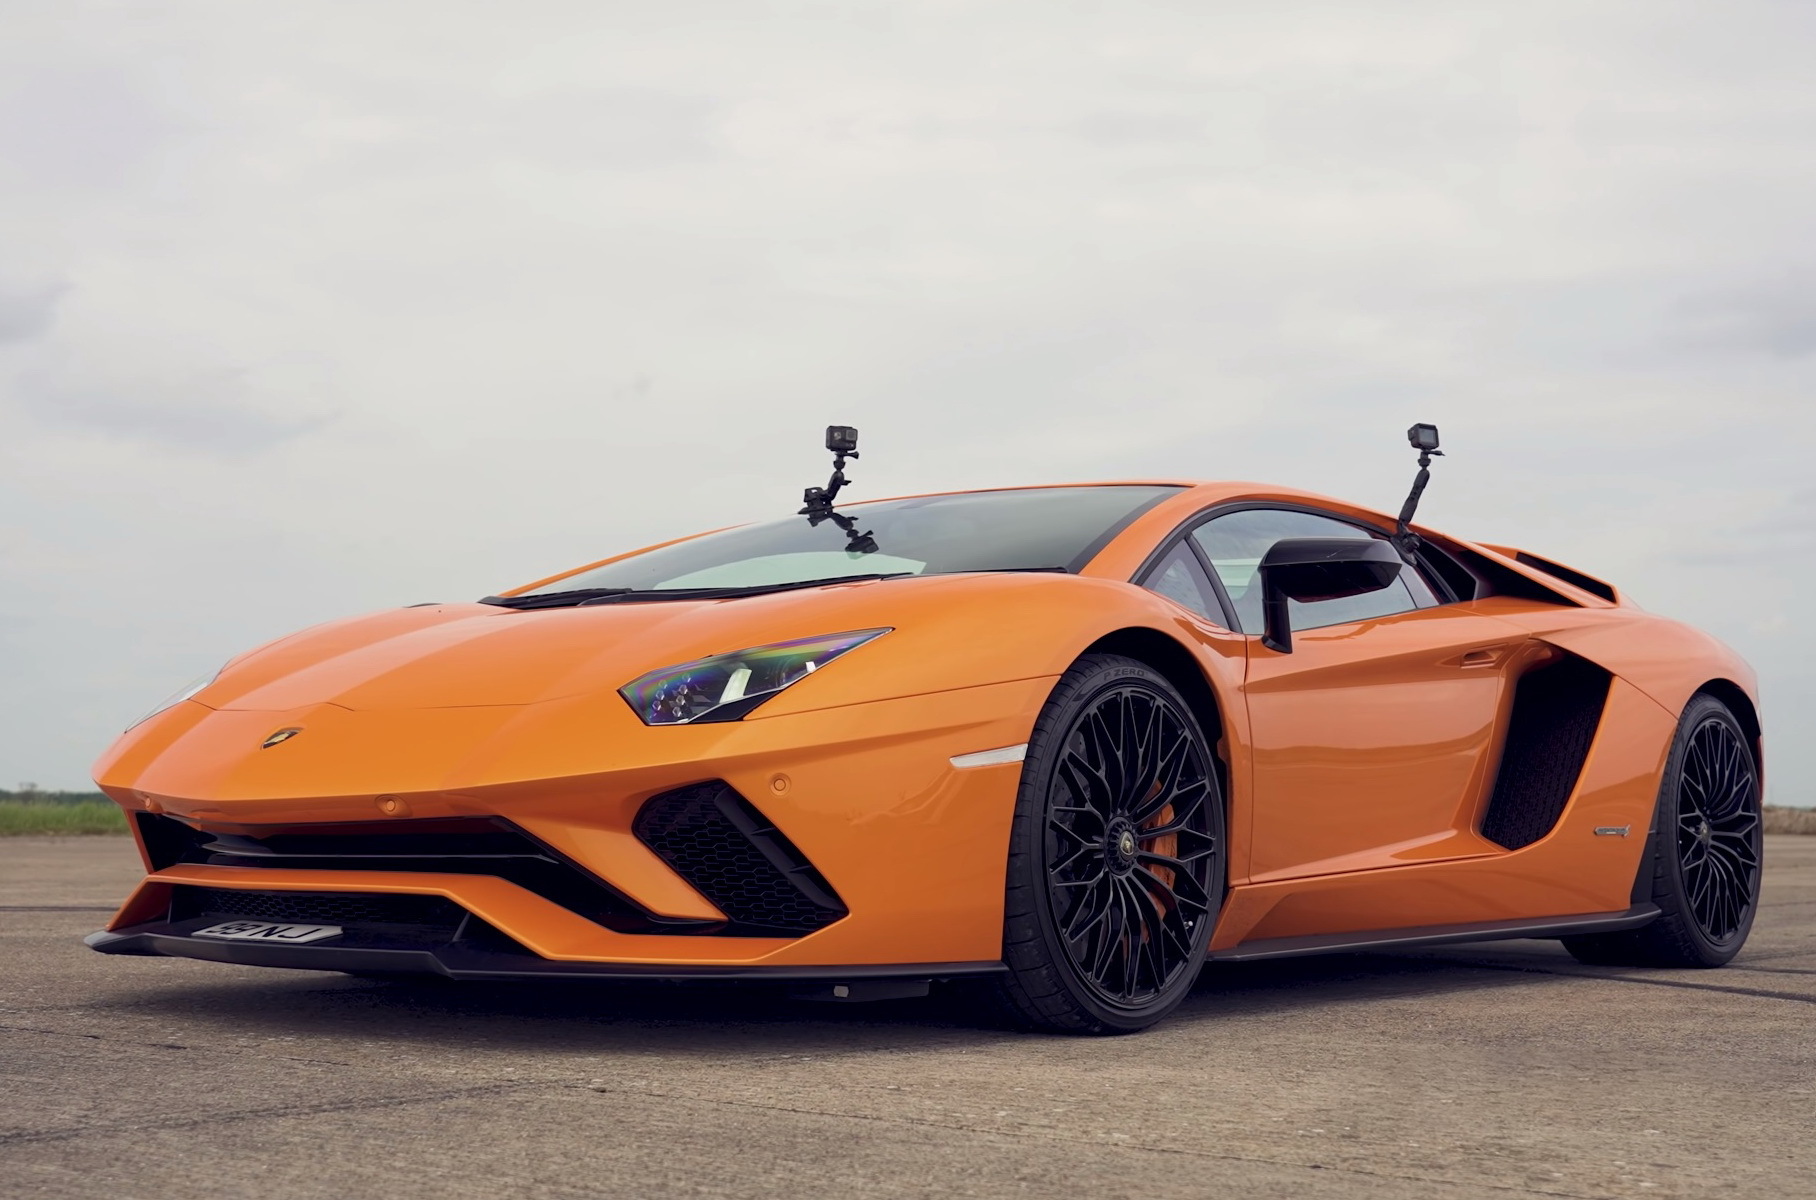 Видео: четыре модификации Lamborghini Aventador сразились в дрэге